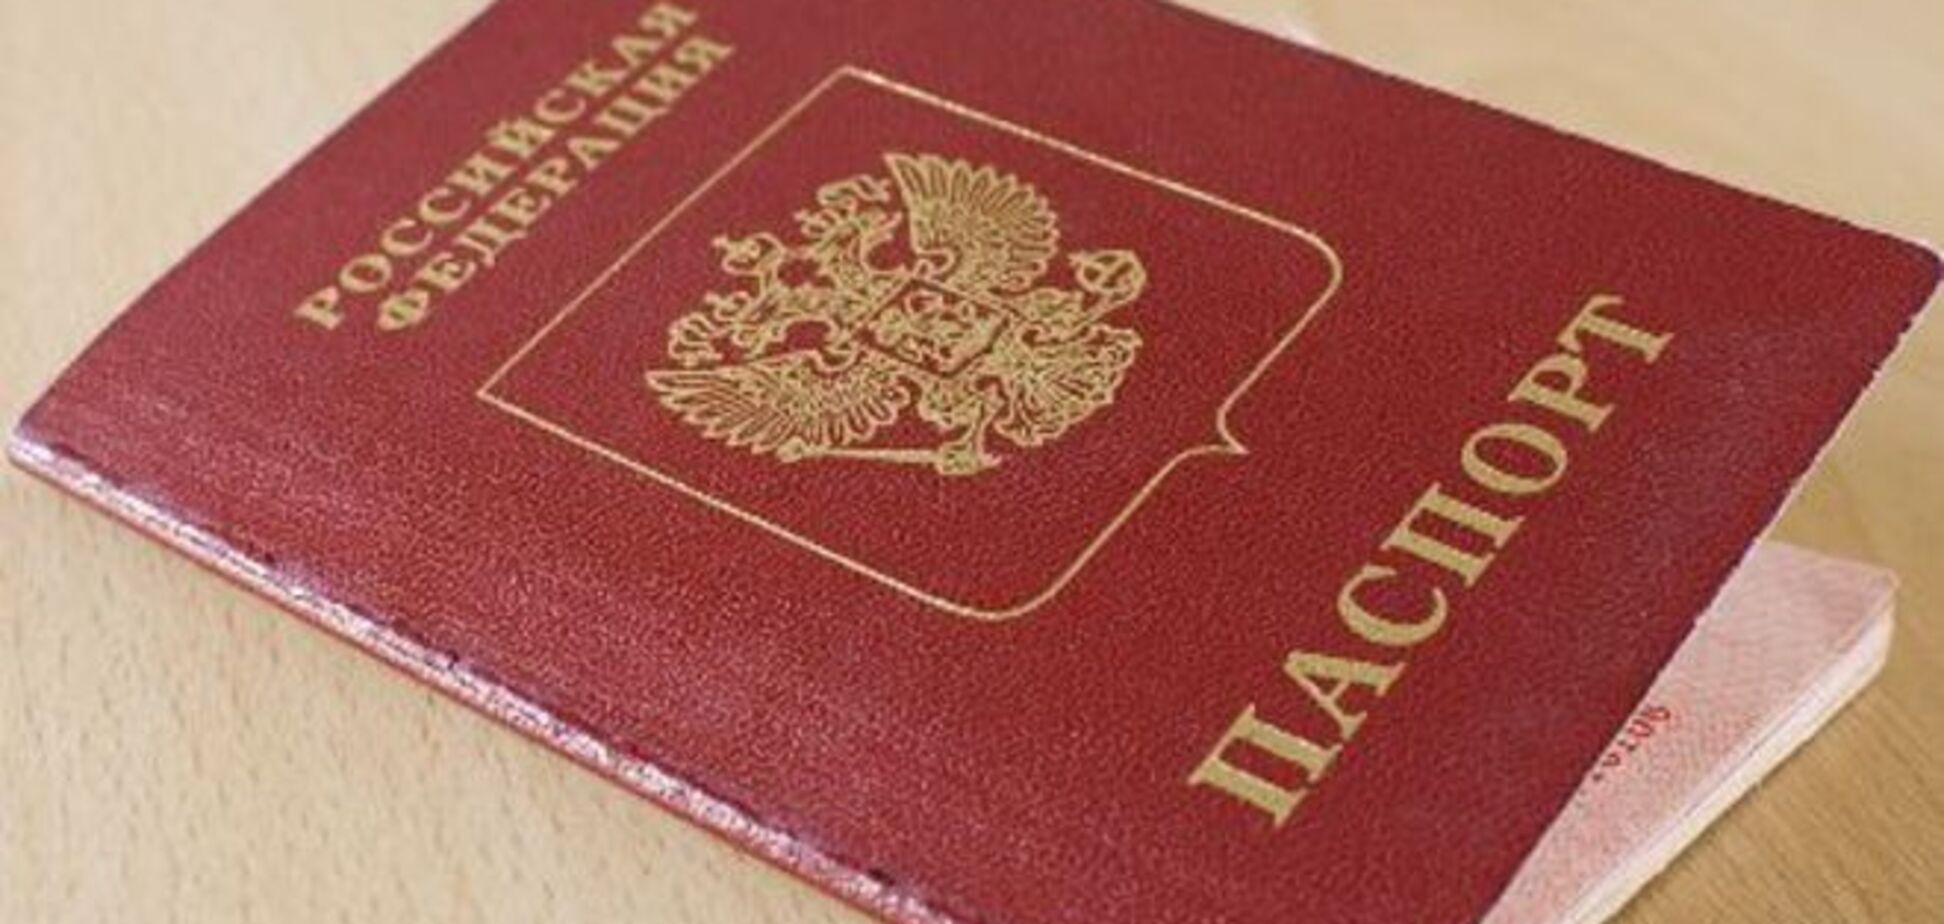 Севастопольцам выдали 'недействительные' российские паспорта